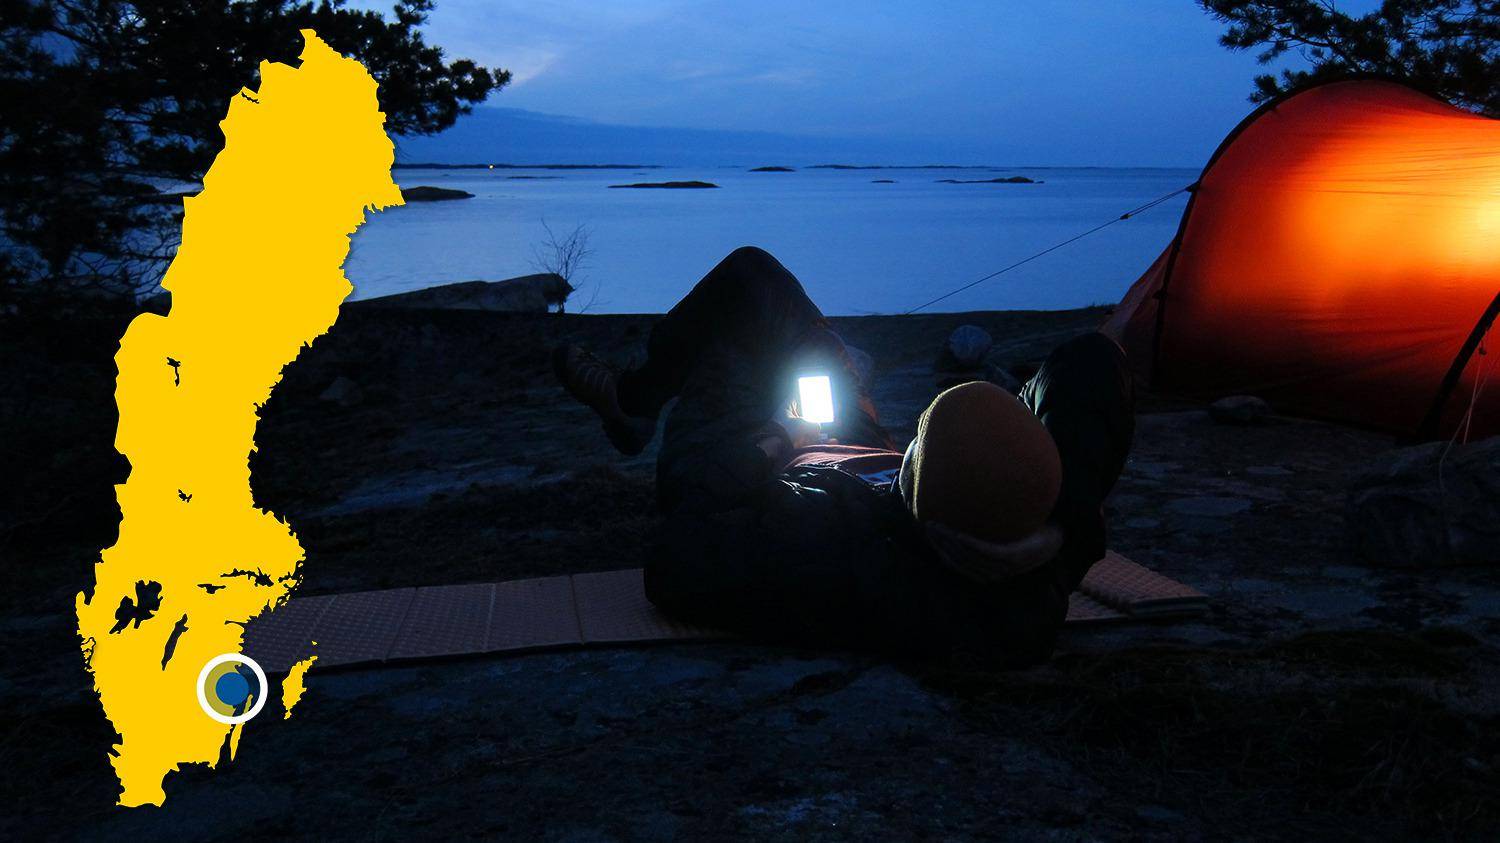 Op een strand aan het water staat een tent opgezet. Het is nacht en een persoon ligt naast de tent naar zijn telefoon te kijken.